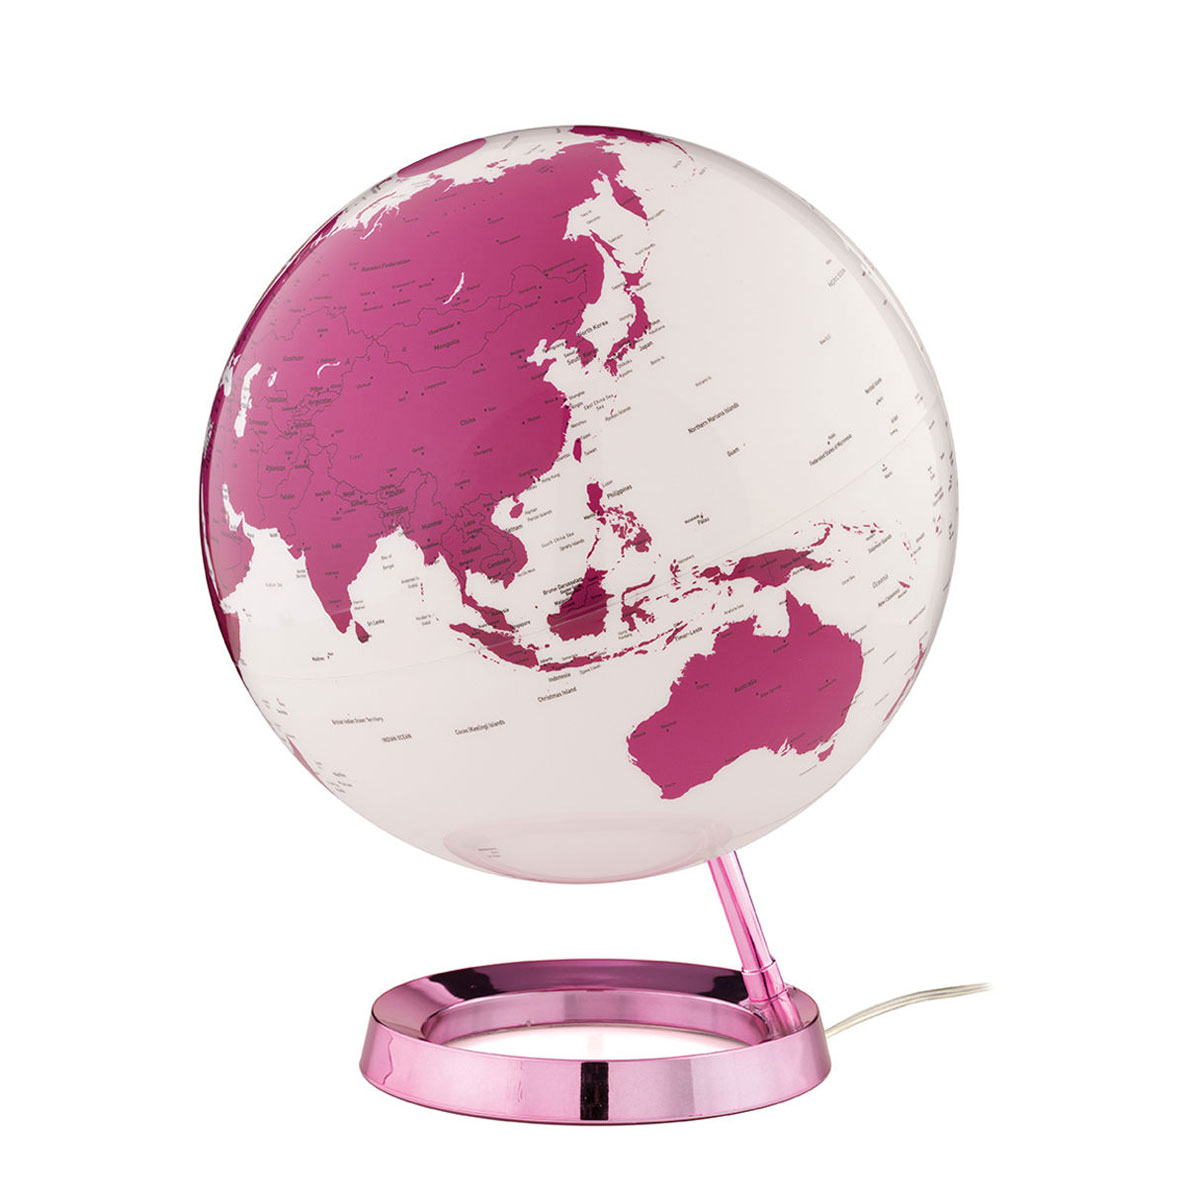 Atmosphere - Illuminated Globe - Hot Pink